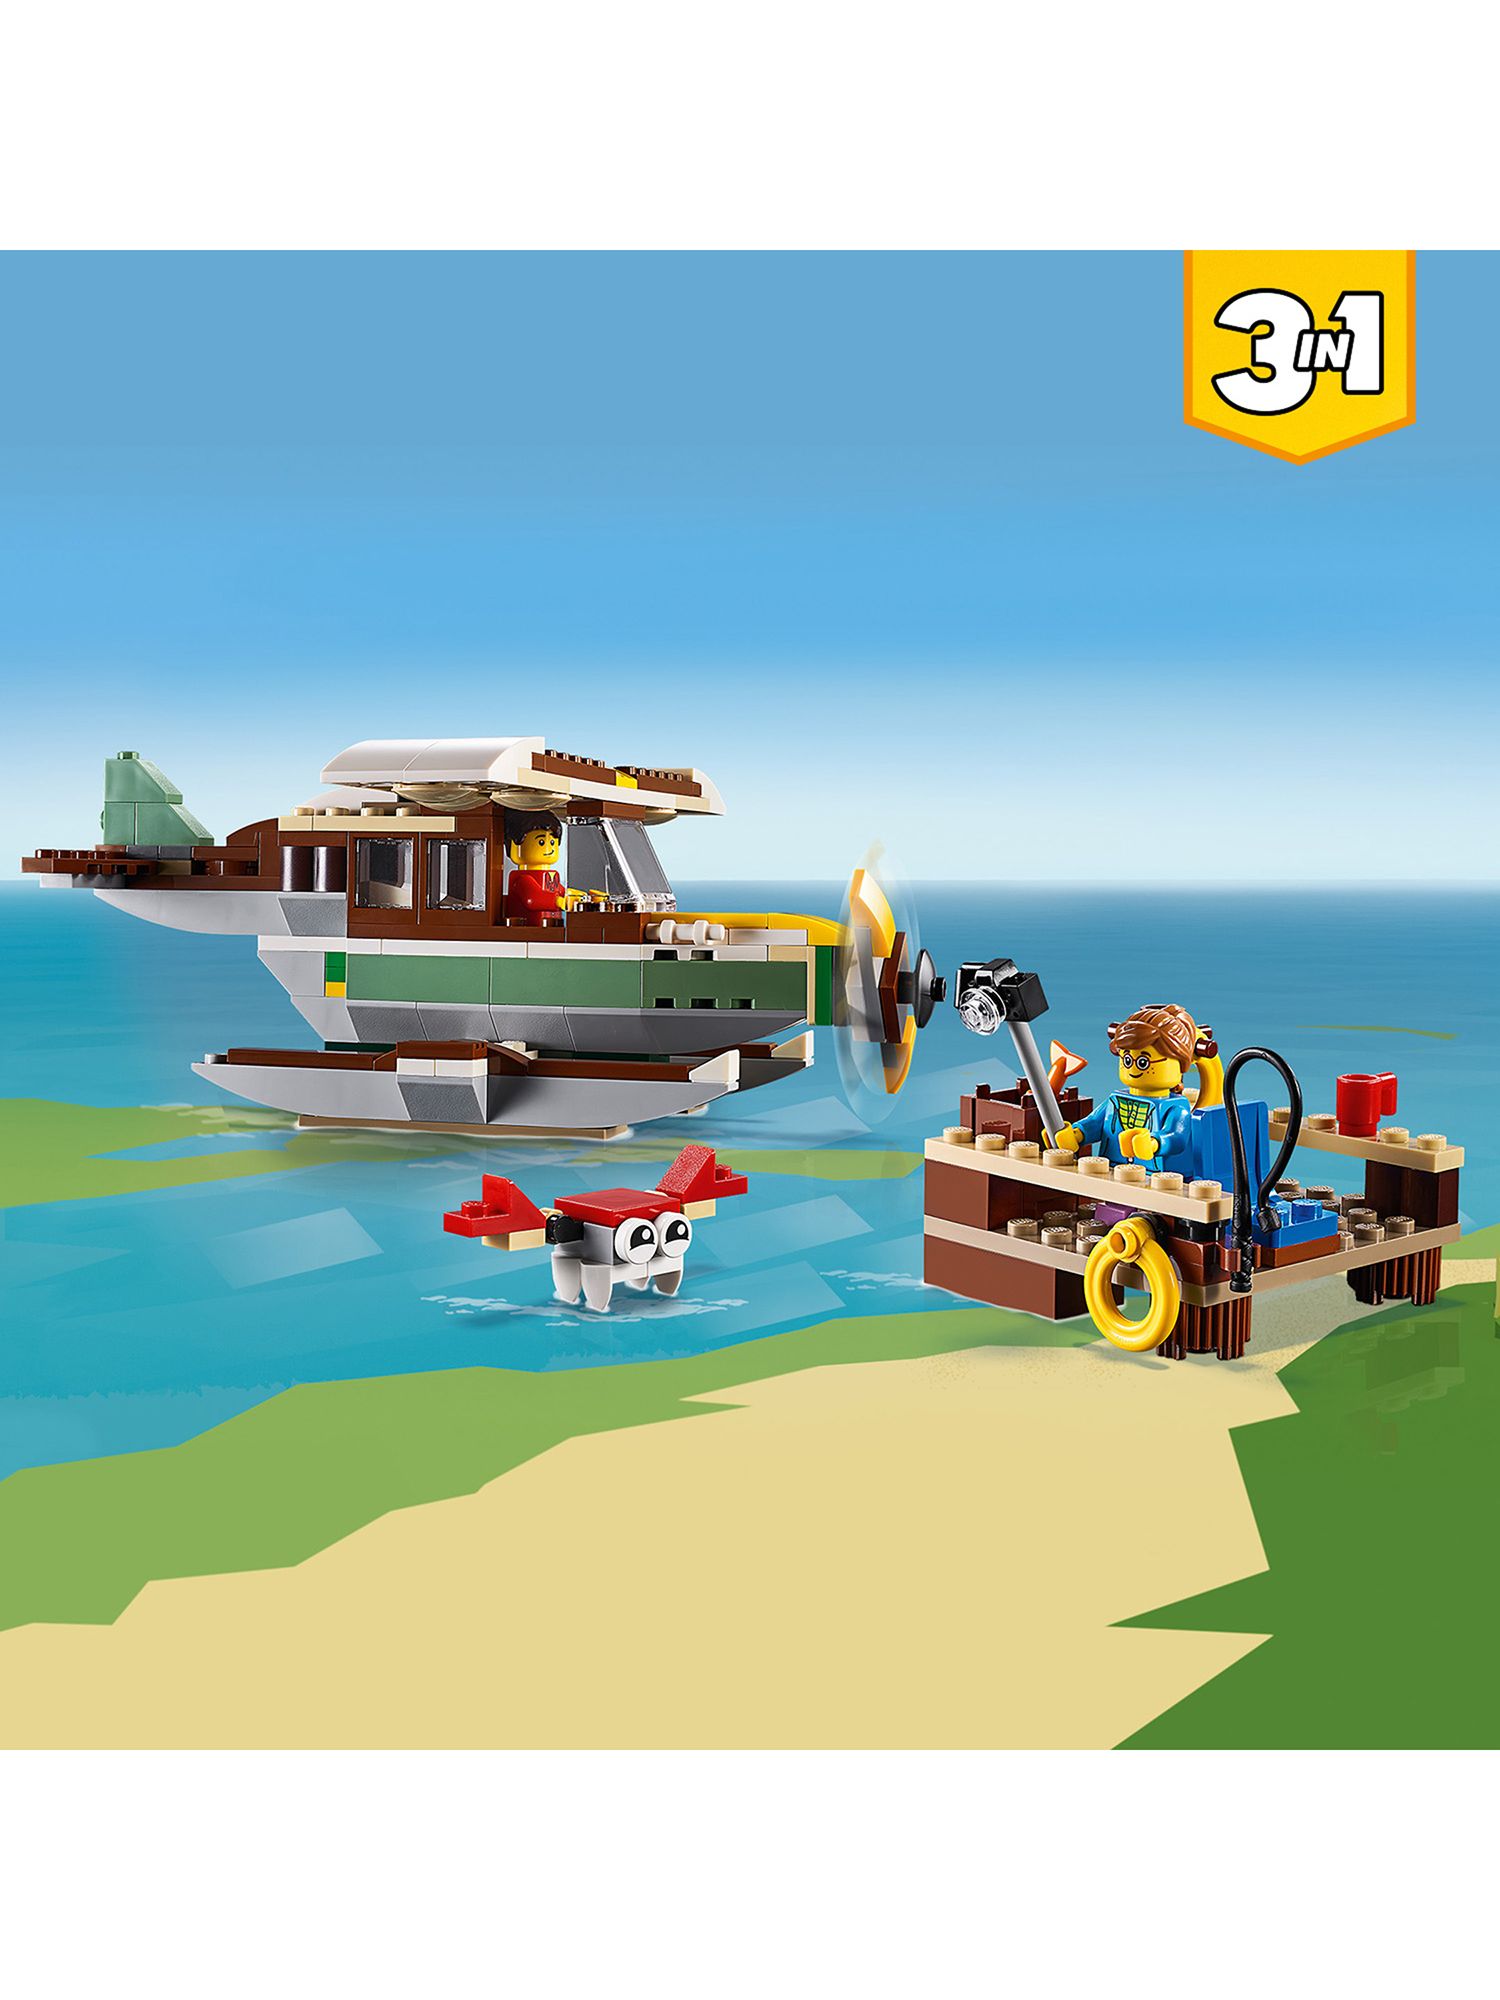 lego boat 3 in 1